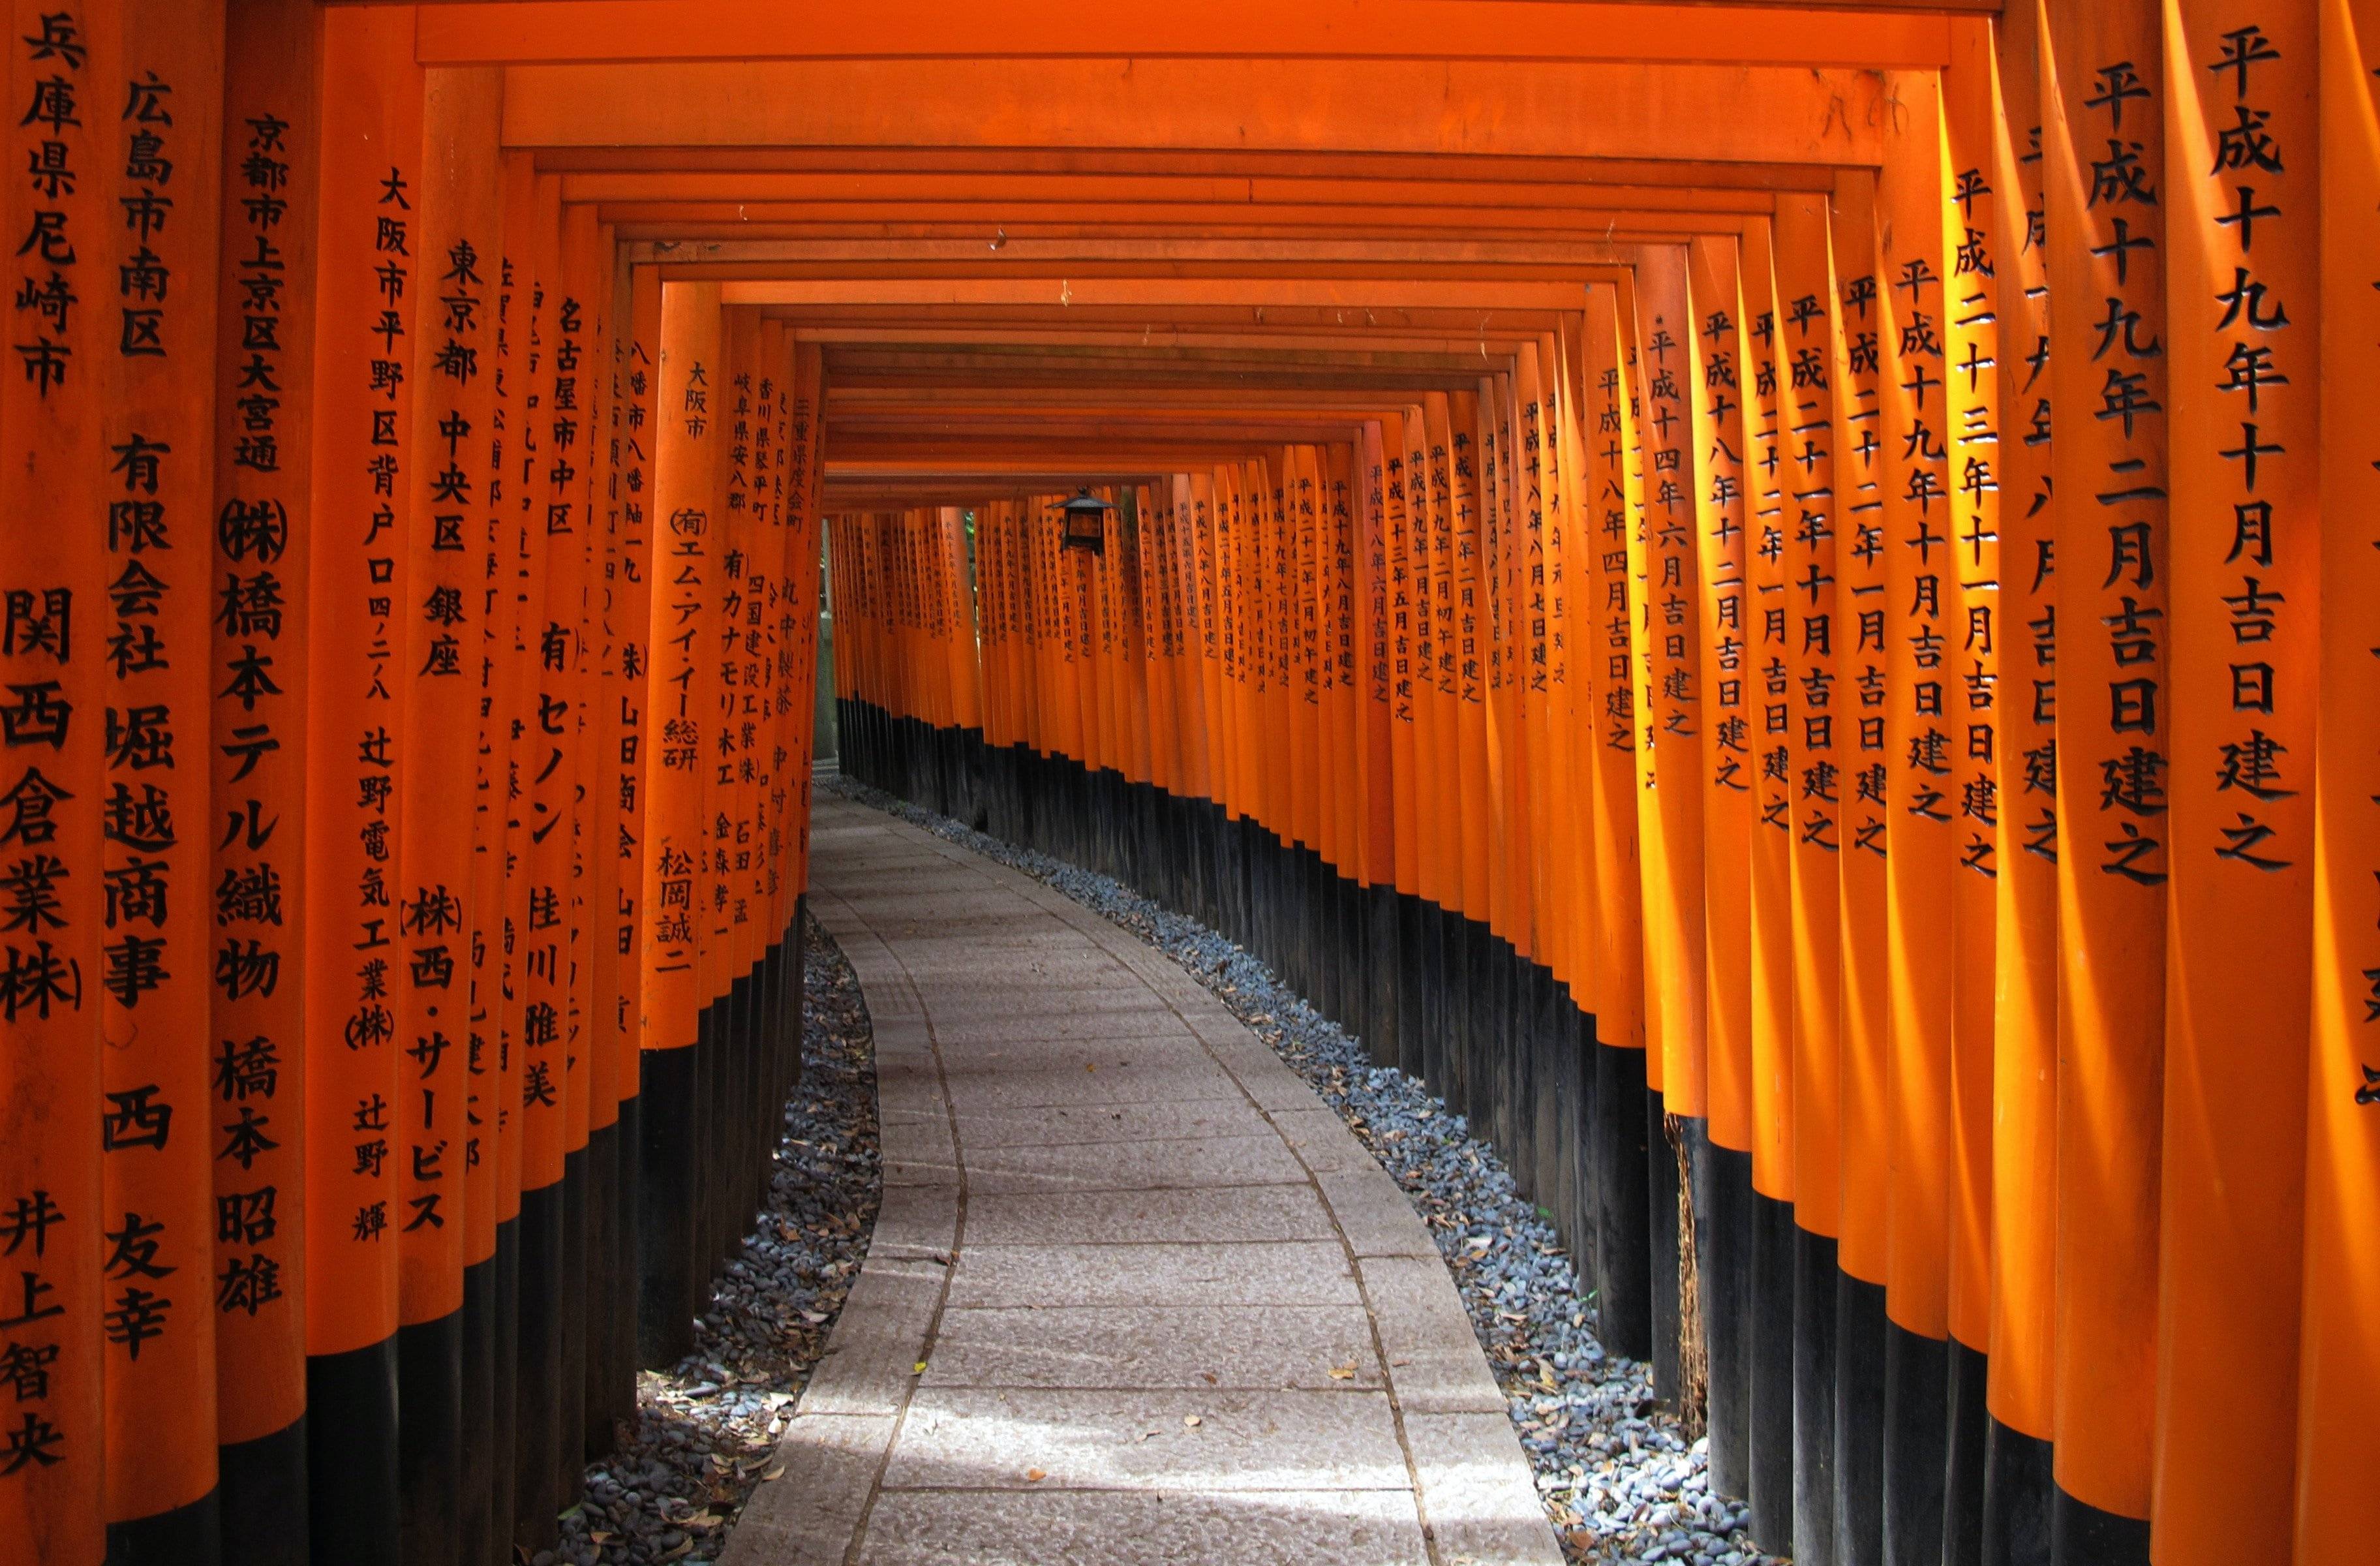 Attraverso i mille Tori rossi del Fushimi Inari fino alla città del tè verde